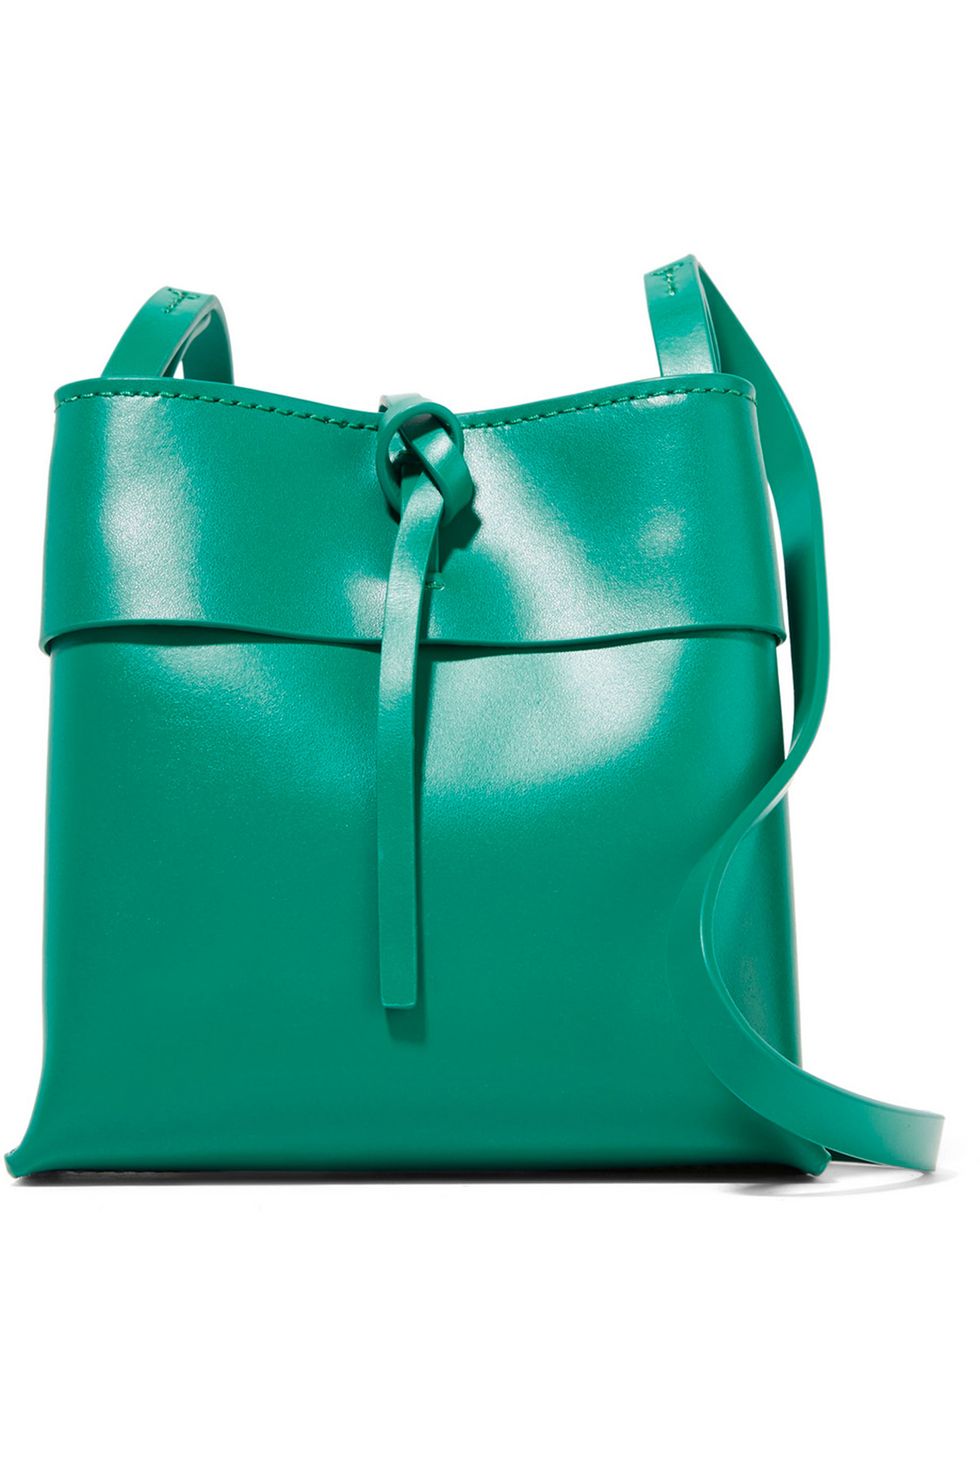 mid-price designer bags, affordable designer bags, cheaper designer handbags, Michael Kors bags, Sophie Hulme bags, Tory Burch bags